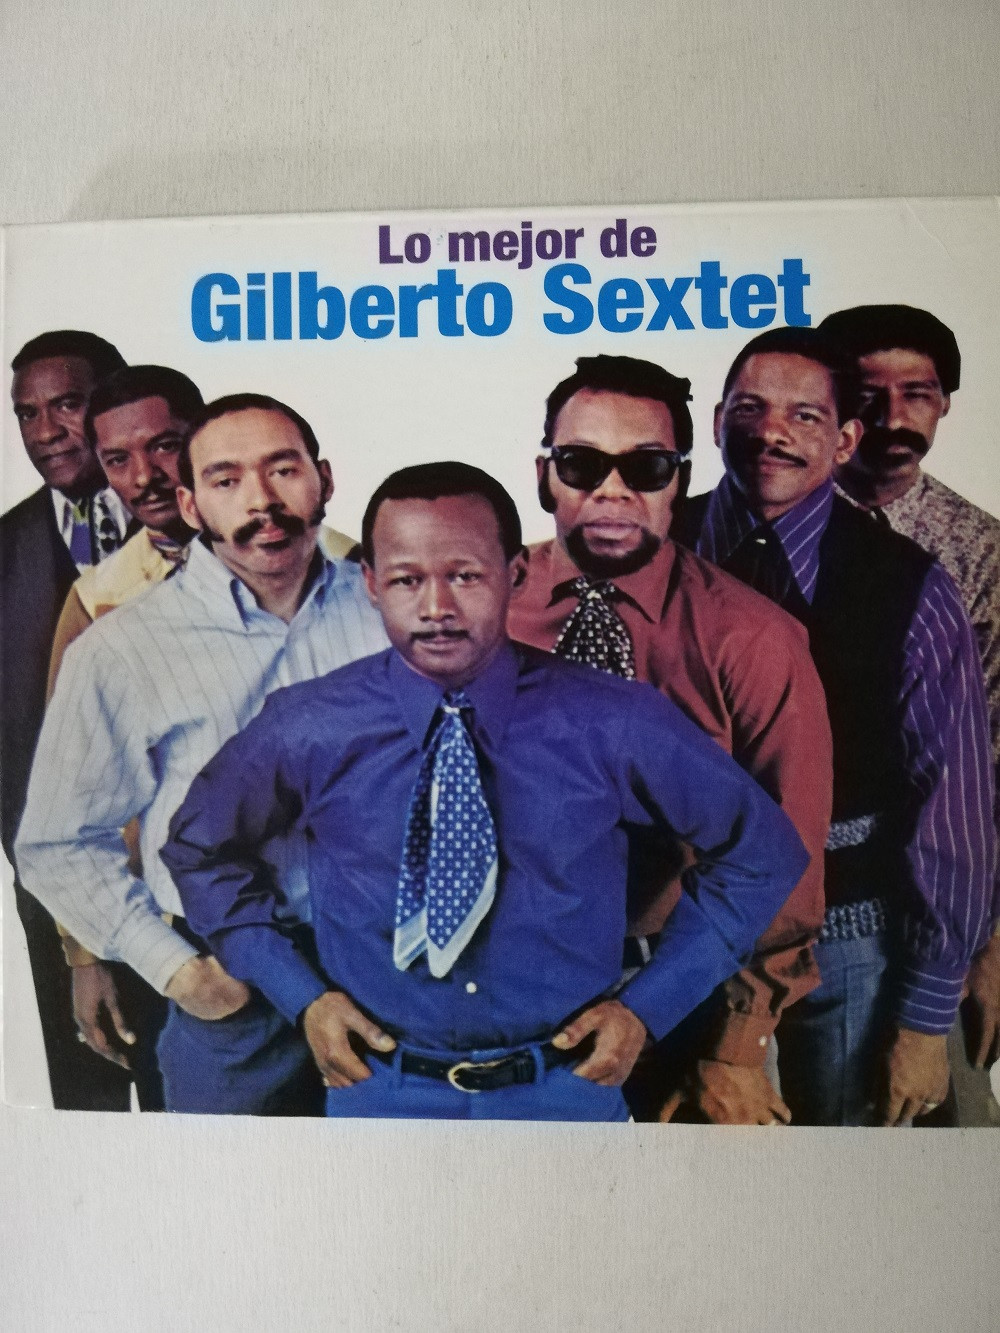 Imagen CD GILBERTO SEXTET - LO MEJOR DE GILBERTO SEXTET